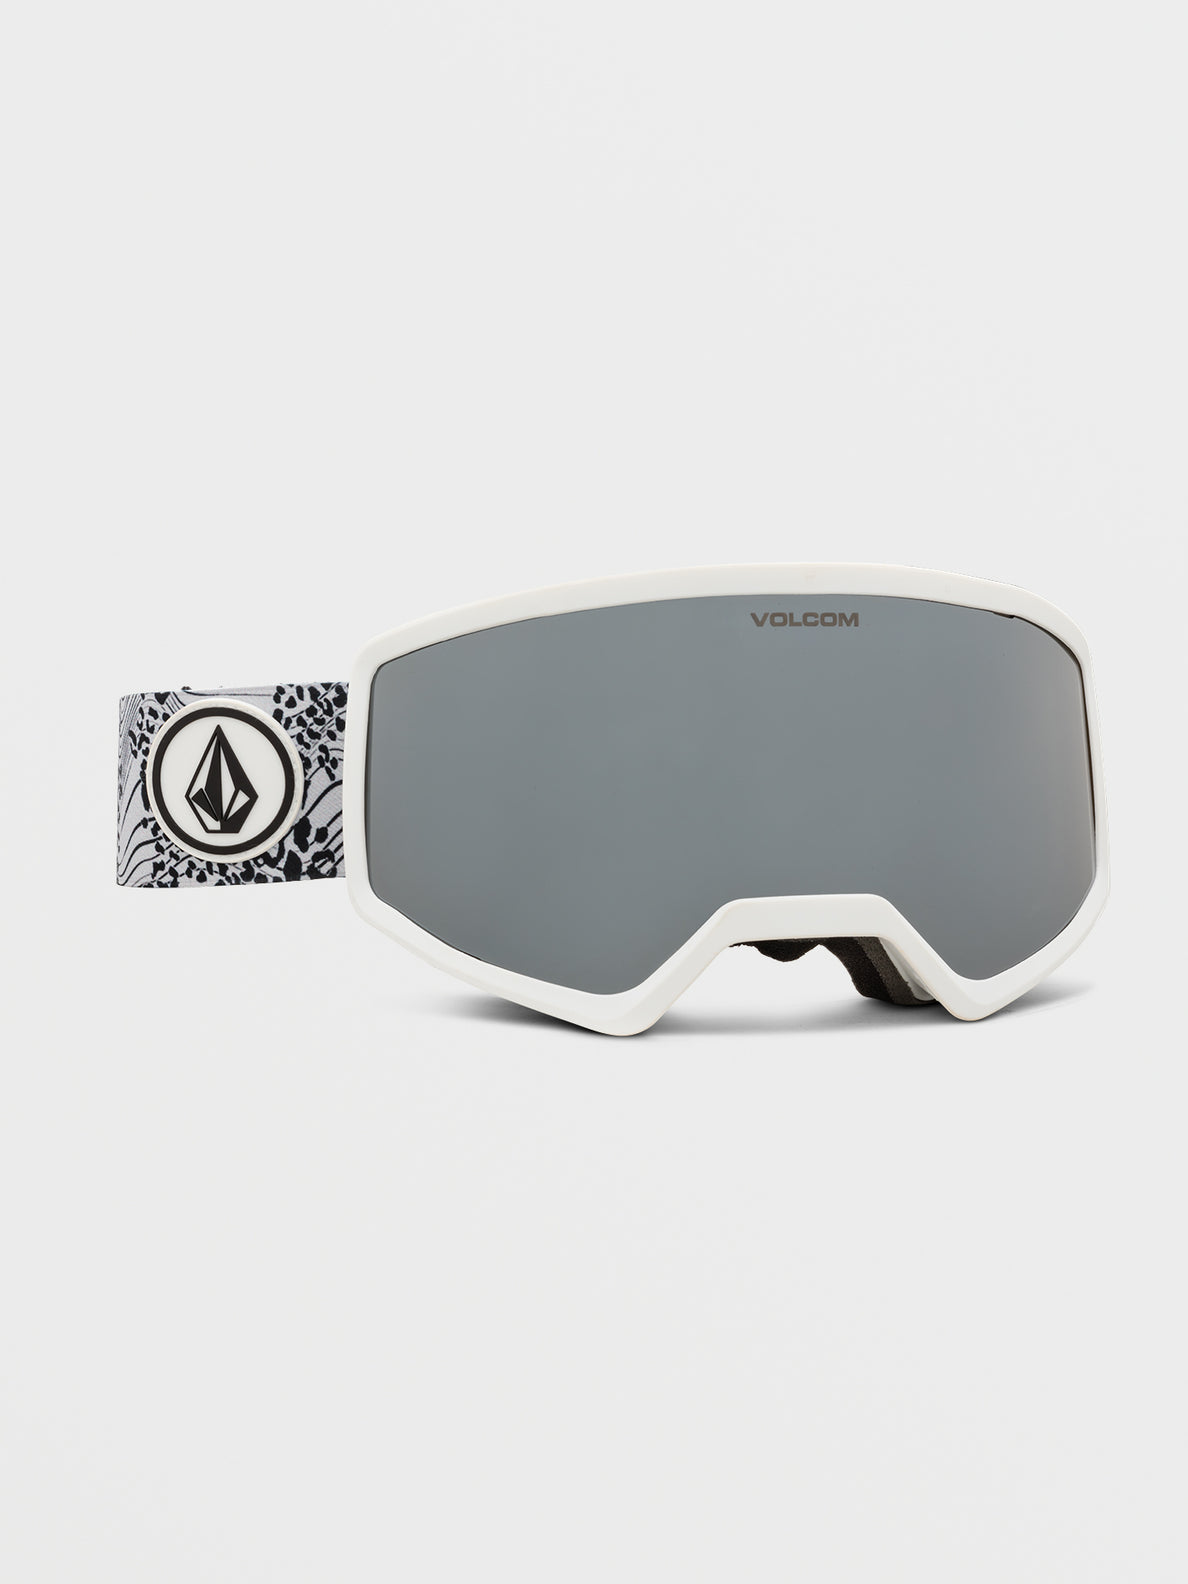 Volcom Stoney Goggle Op Cheetah Silber Chrom | Meistverkaufte Produkte | Neue Produkte | Neueste Produkte | surfdevils.com